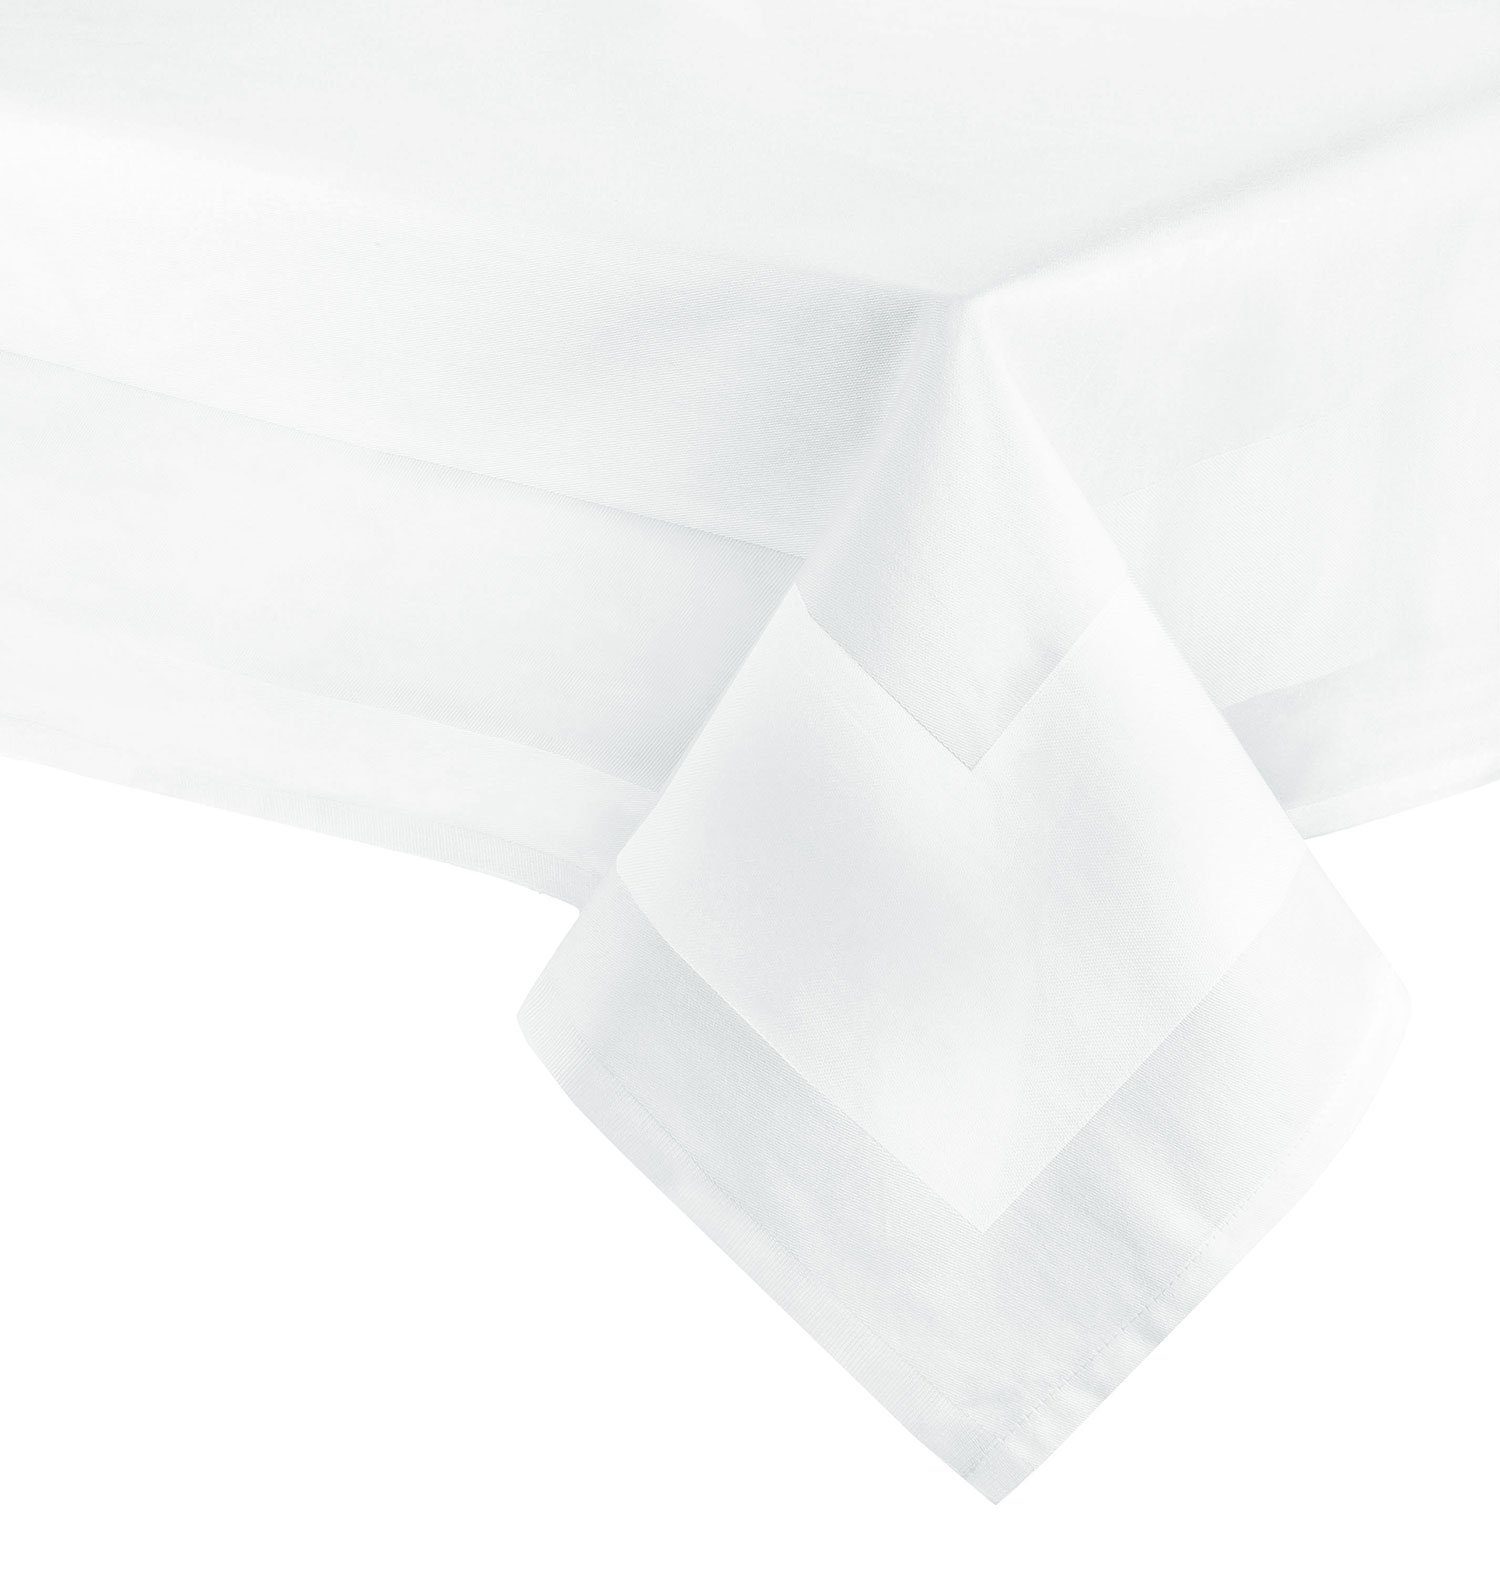 ZOLLNER Tischdecke, edle Atlaskante, 130 x 130 cm, 100% Baumwolle, Vollzwirn, vom Hotelwäschespezialisten